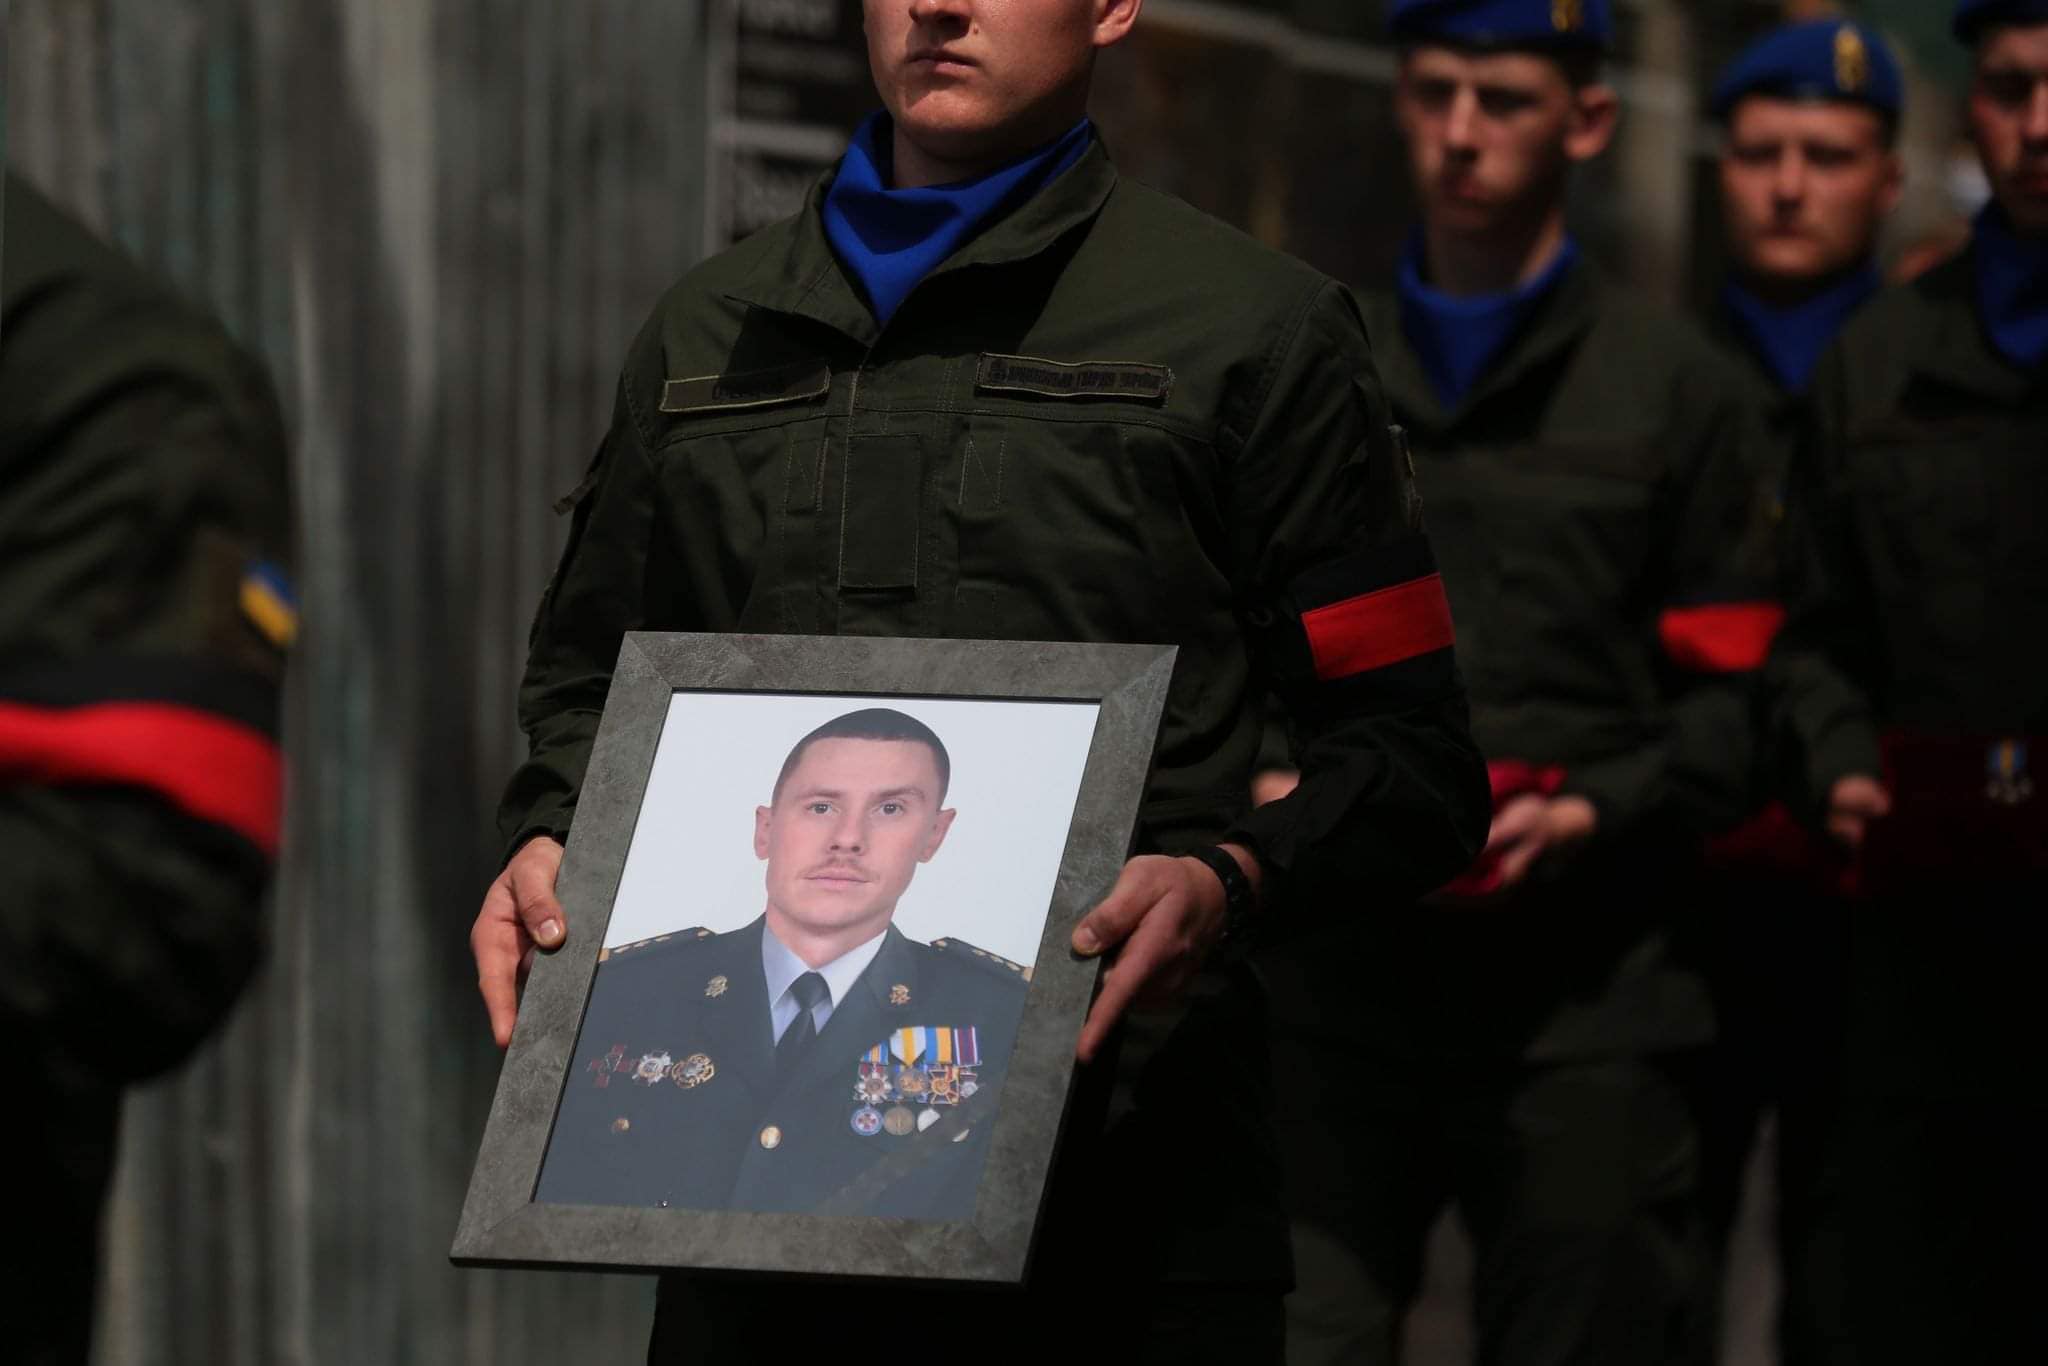 Сколько погибло российских на войне украина